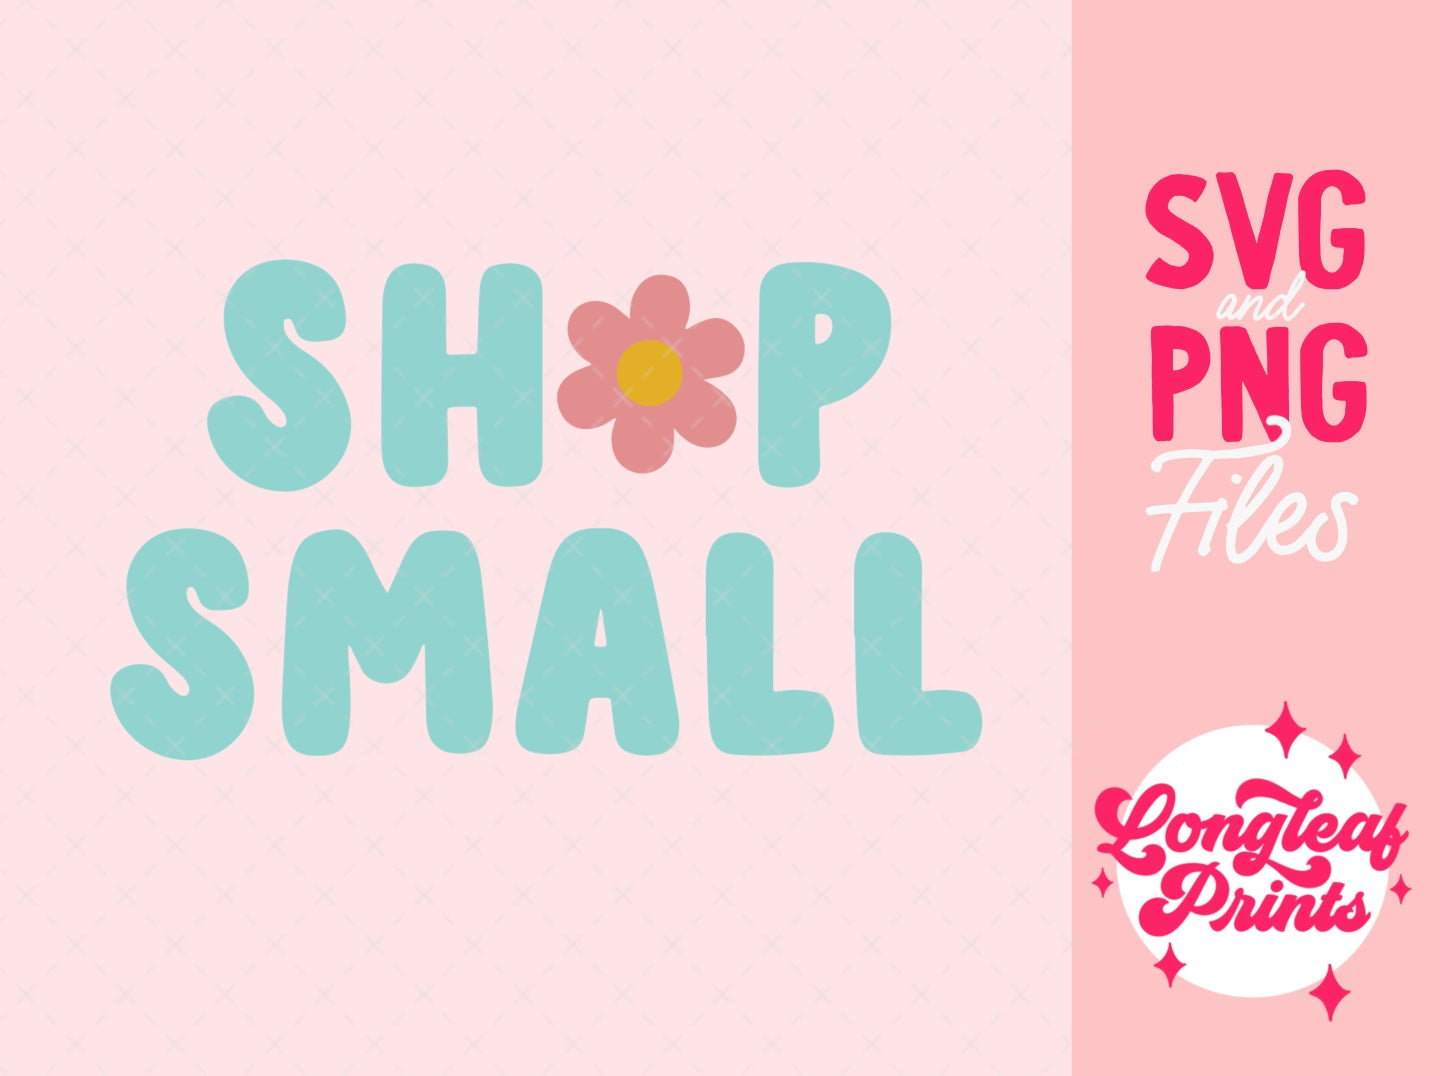 Shop Small Retro Flower SVG Digital Download Design File